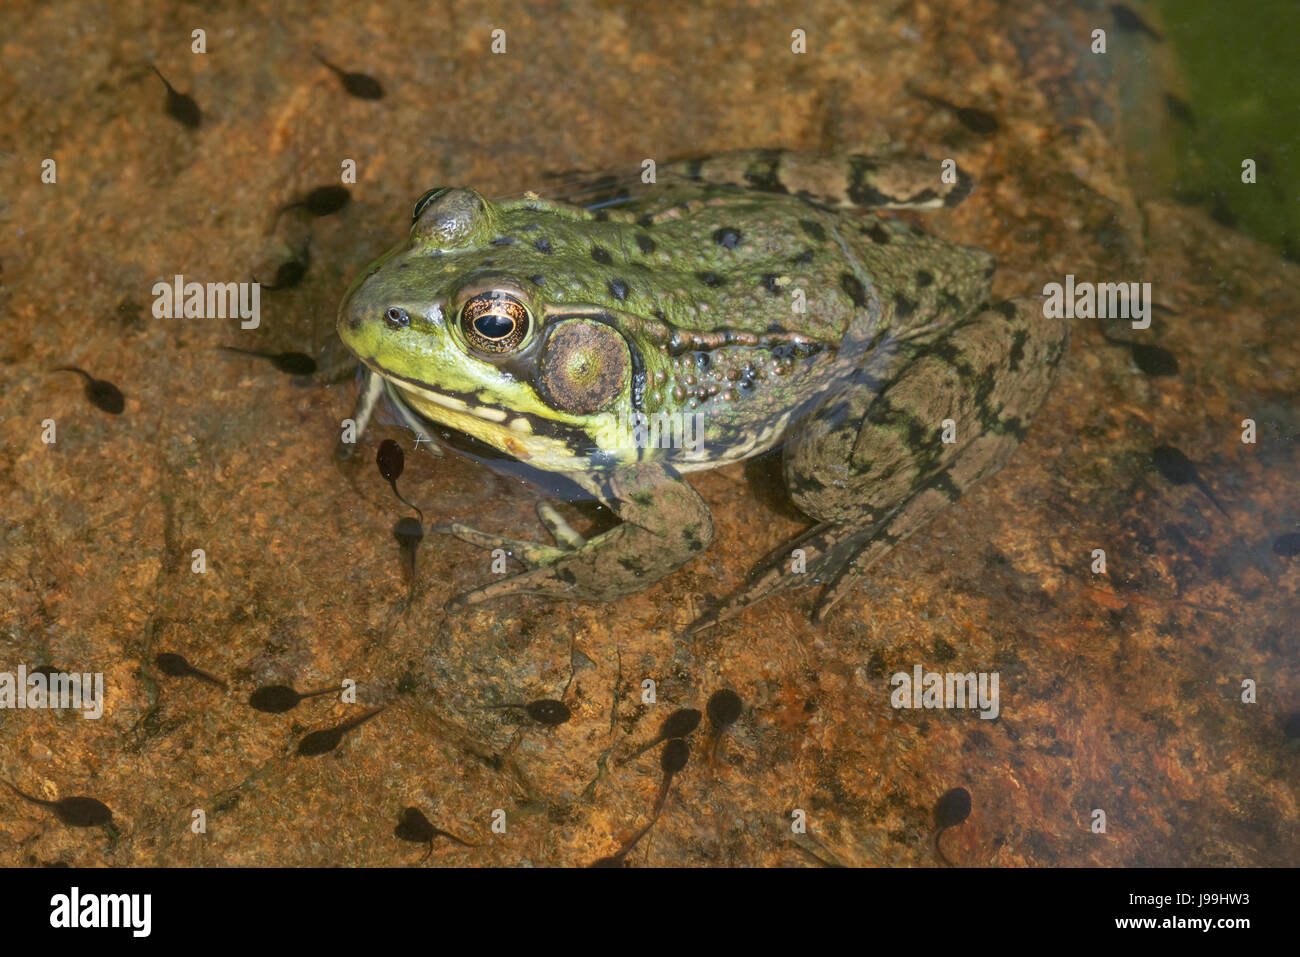 Rana verde (Lithobates clamitans) appoggiato sulla roccia in uno stagno, con toad girini, E STATI UNITI D'AMERICA Foto Stock